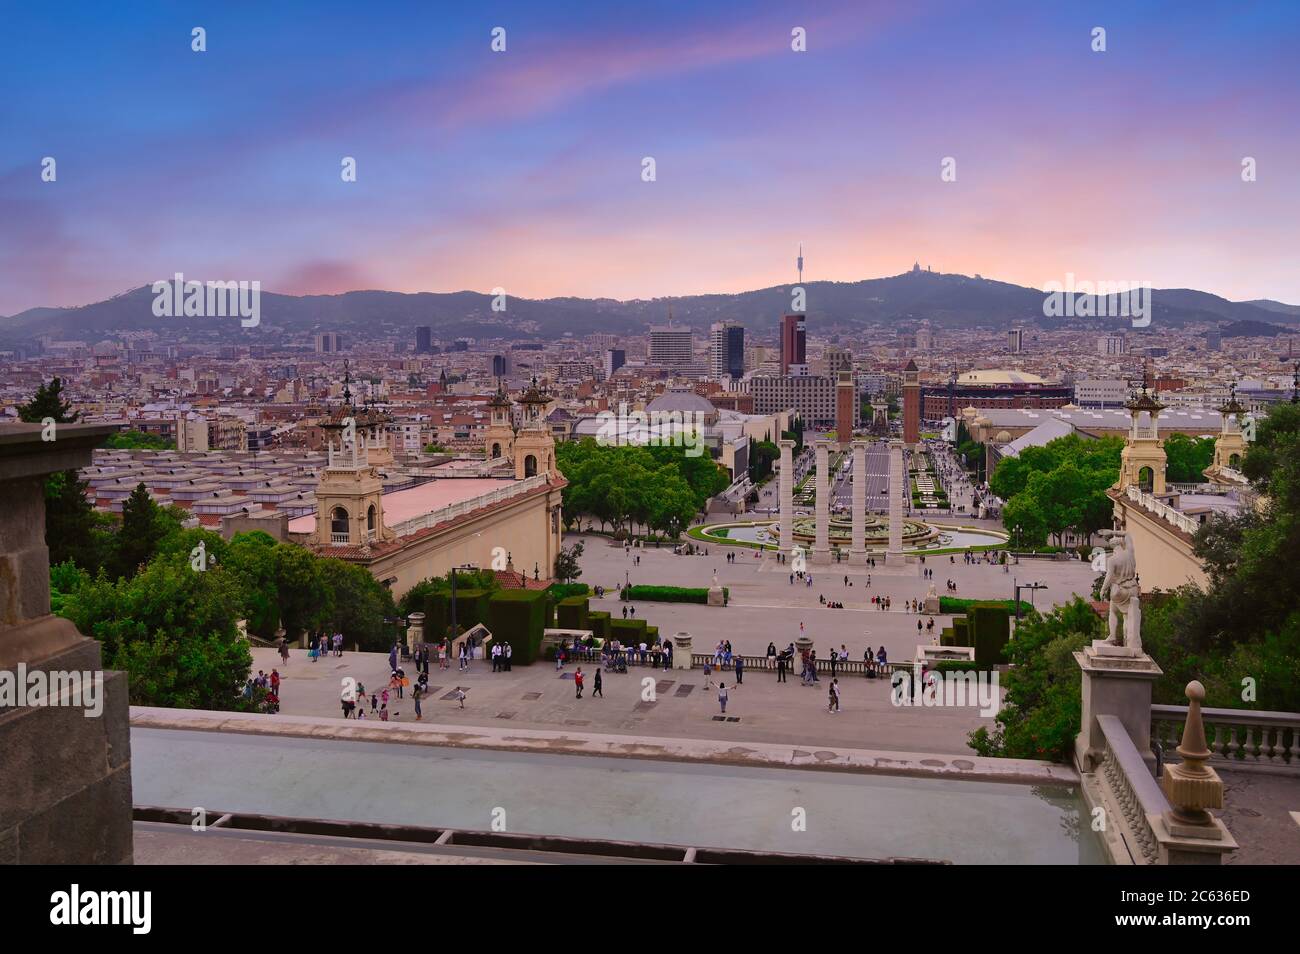 15 juin 2019 - Barcelone, Espagne - les quatre colonnes sous le Palau Nacional sur la montagne Montjuic et près de la Plaça d'Espanya et du Poble Espanyol Banque D'Images